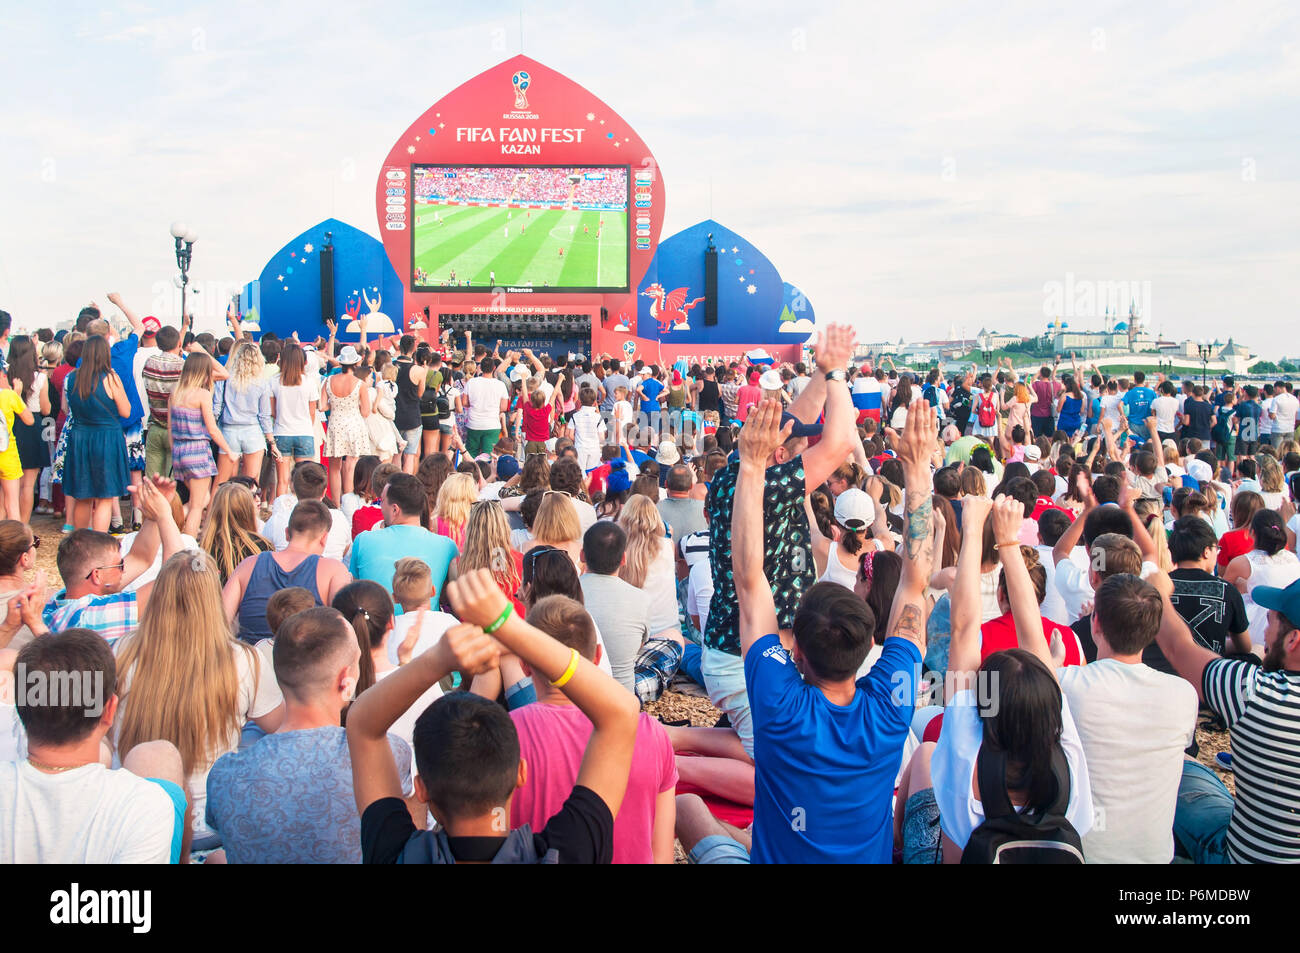 KAZAN, RUSSIE - 1 juillet, 2018 : la Russie football fans cheering at Kazan Fan Fest Zone après la victoire de la Russie dans l'Espagne contre la Russie match. Aygul Crédit : Sarvarova/Alamy Live News Banque D'Images